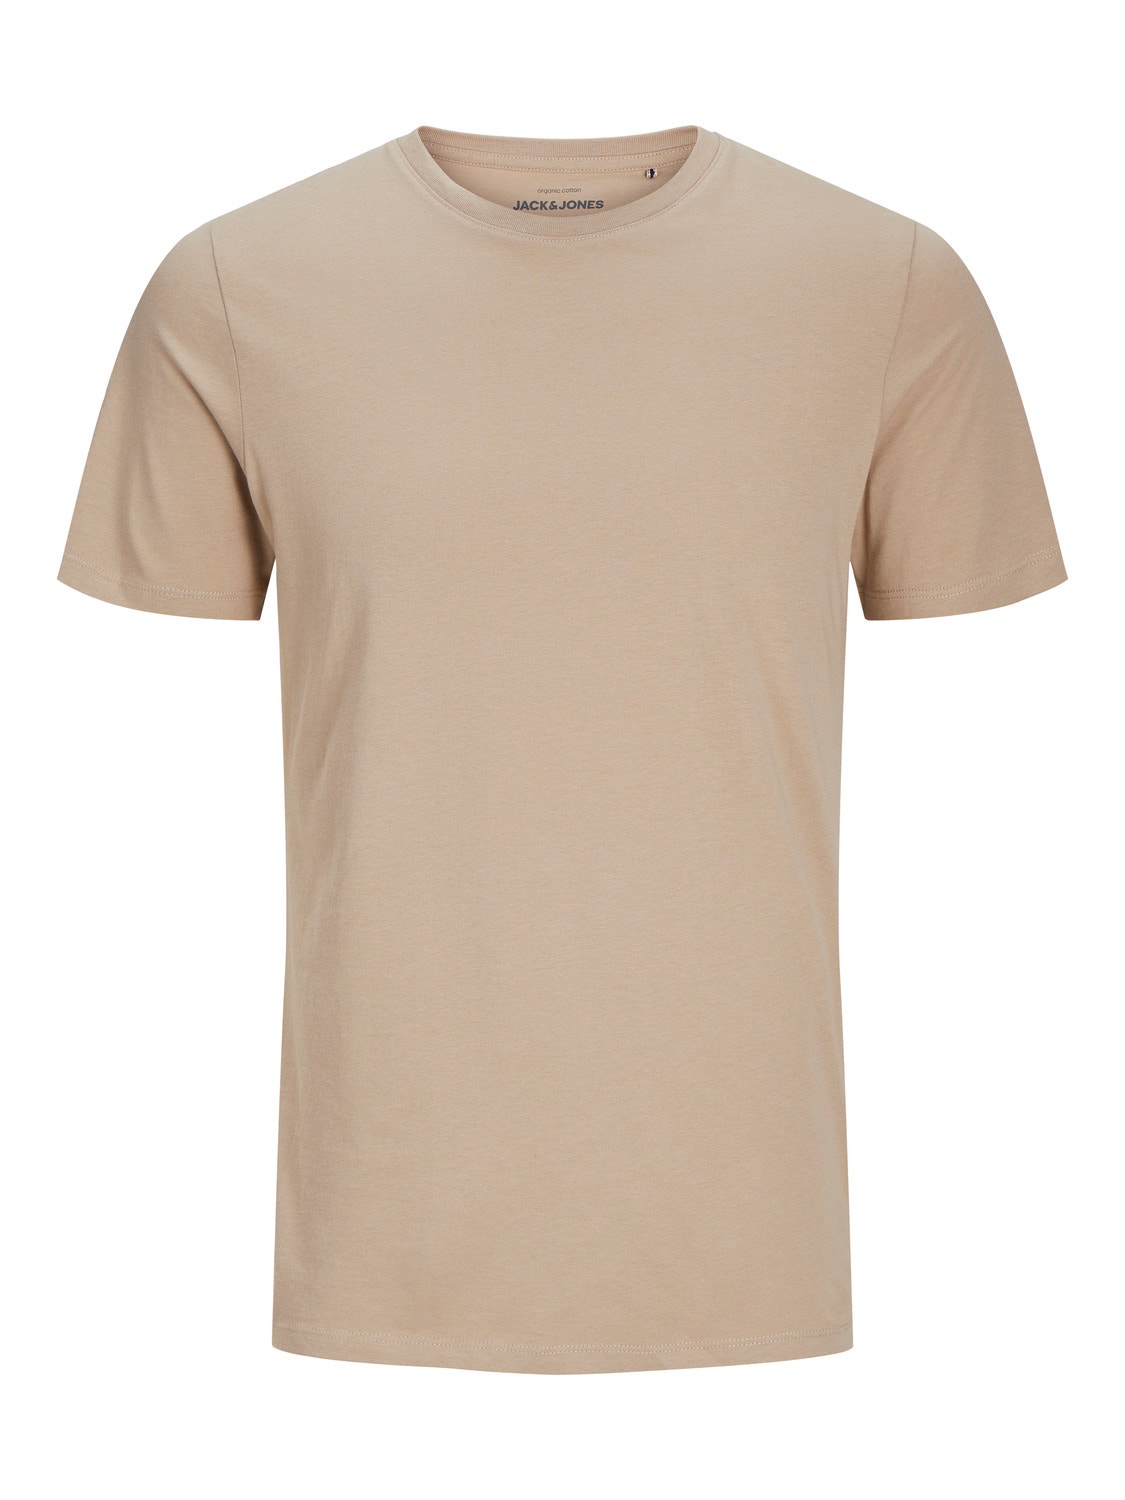 Jack & Jones Plain Crew neck T-shirt -Crockery - 12156101